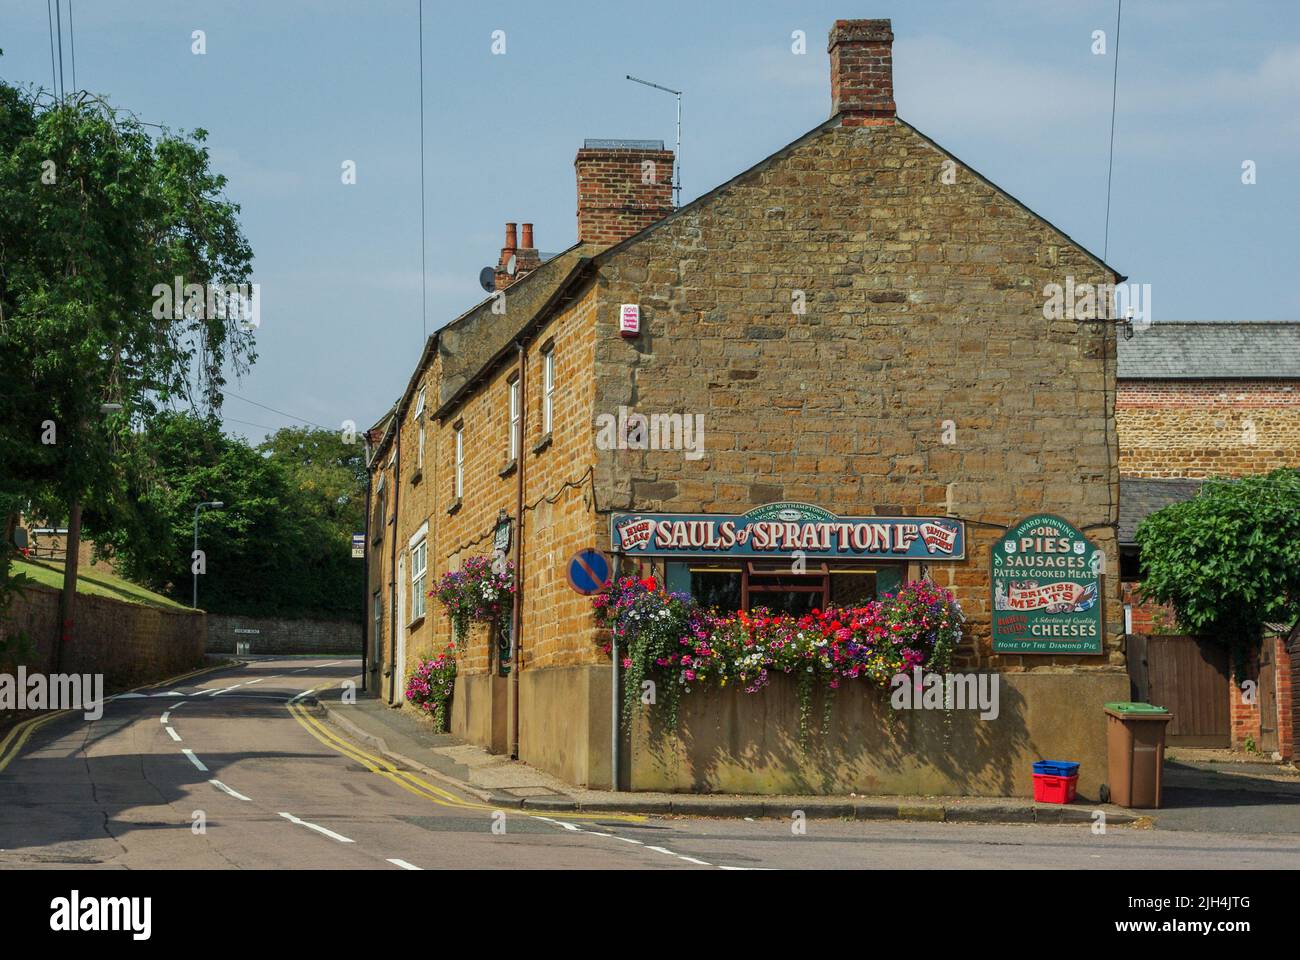 Scena stradale in estate nel grazioso villaggio di Spratton, Northamptonshire, Regno Unito; edifici in pietra color miele tra cui il macellaio di Sauls. Foto Stock